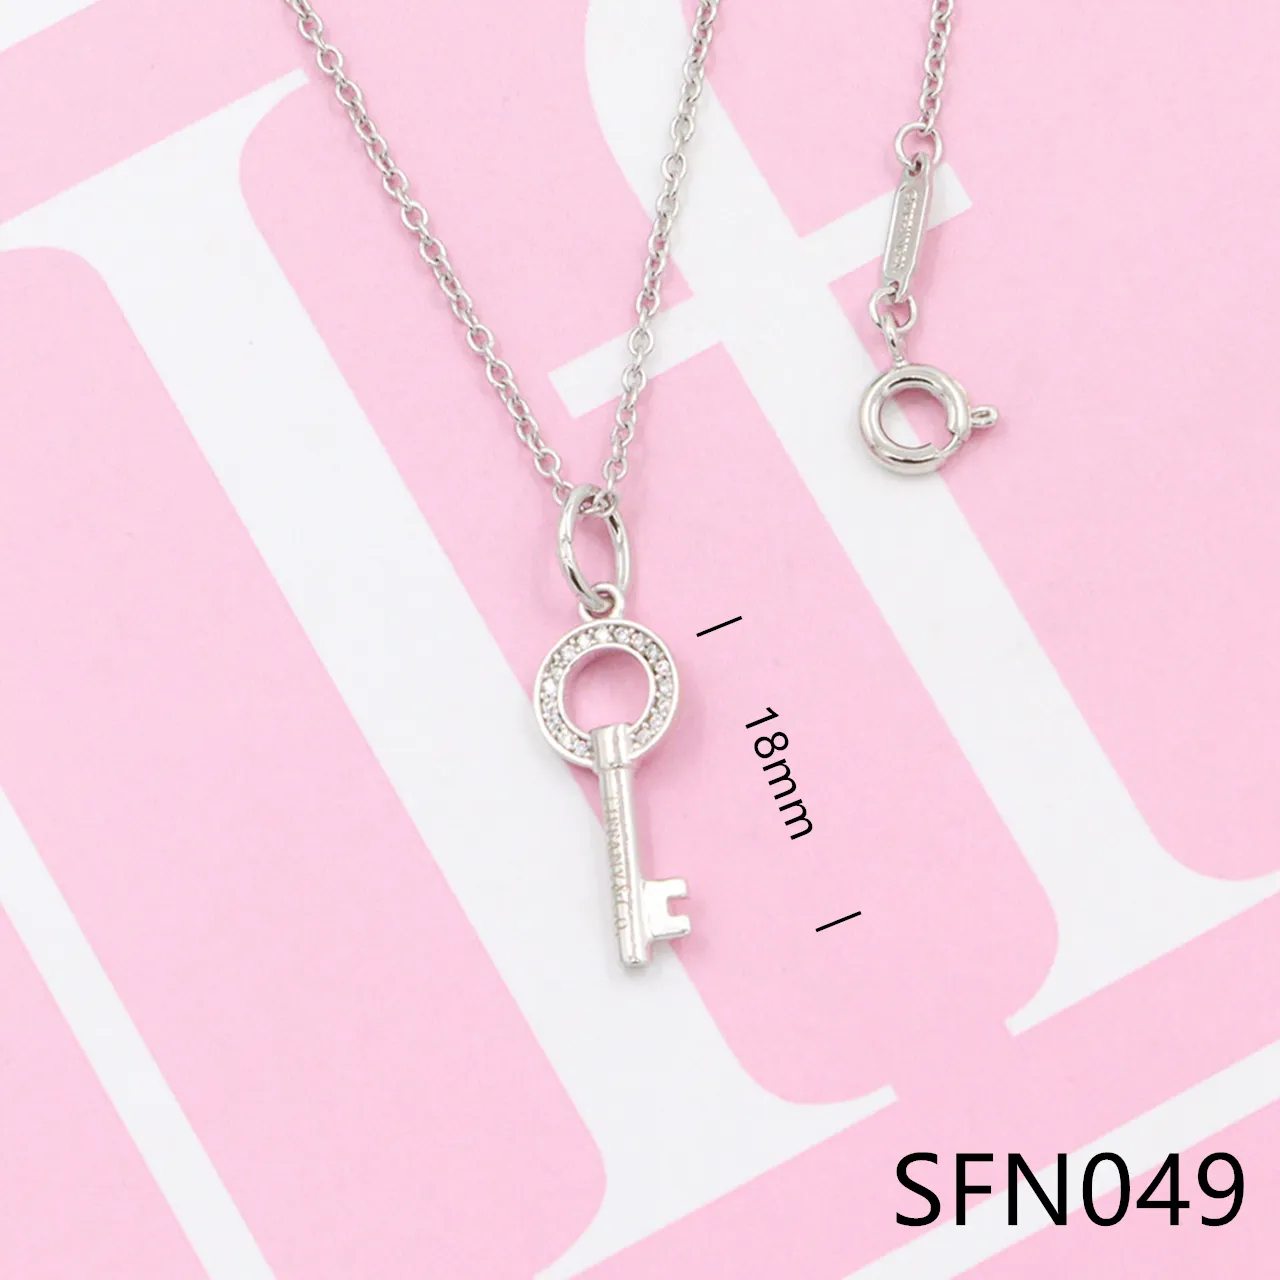 Luxur Romantic Gift S925 Silver Designer Halsband Love Heart Key Pendant Necklace For Women Girls SFN5